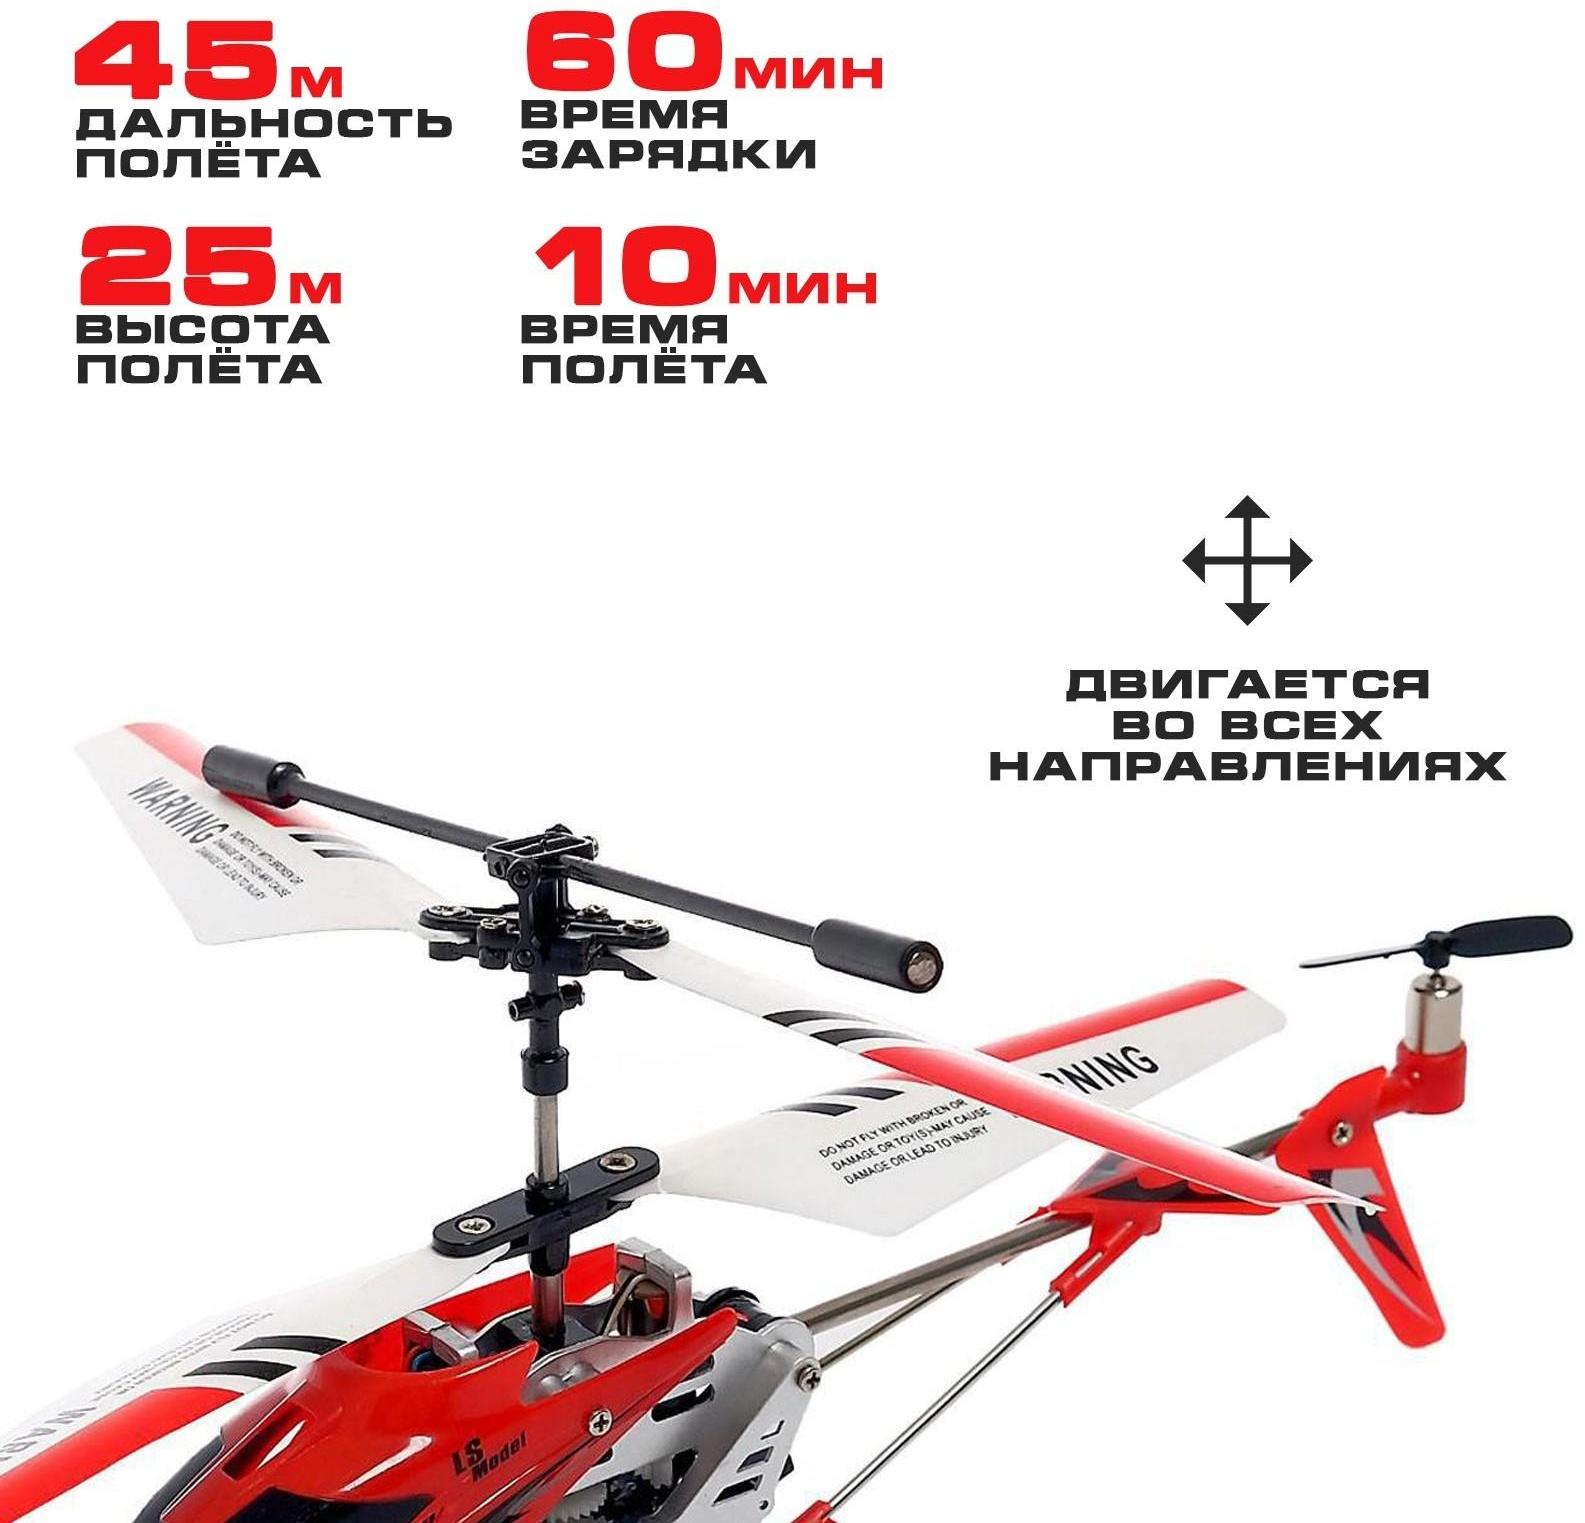 Вертолет радиоуправляемый SKY с гироскопом, цвет красный